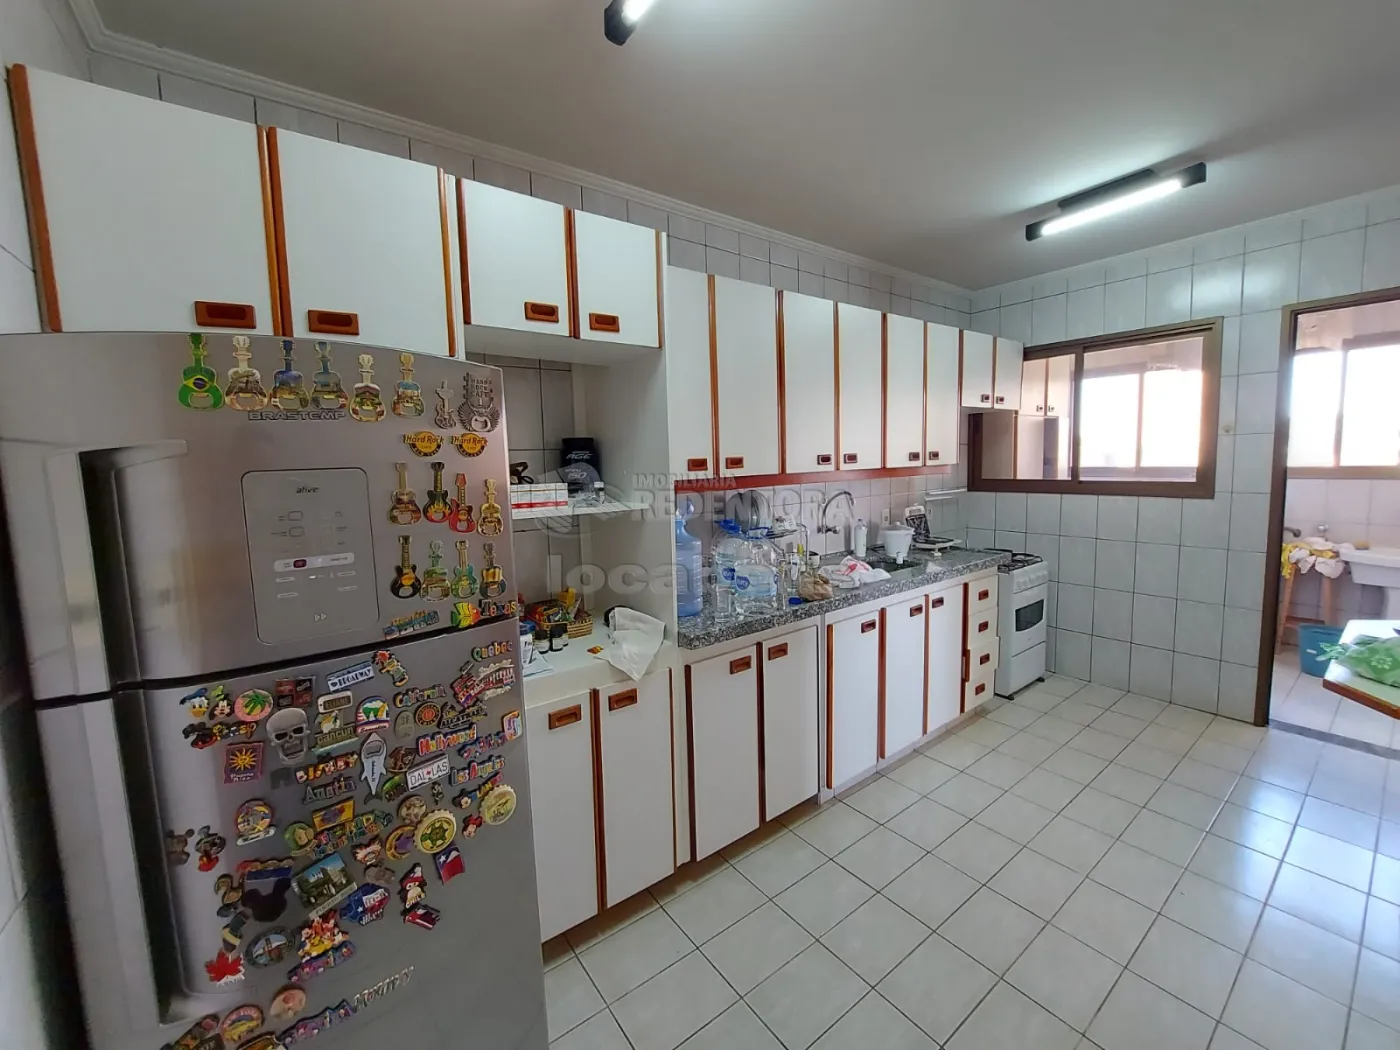 Comprar Apartamento / Padrão em São José do Rio Preto R$ 320.000,00 - Foto 3